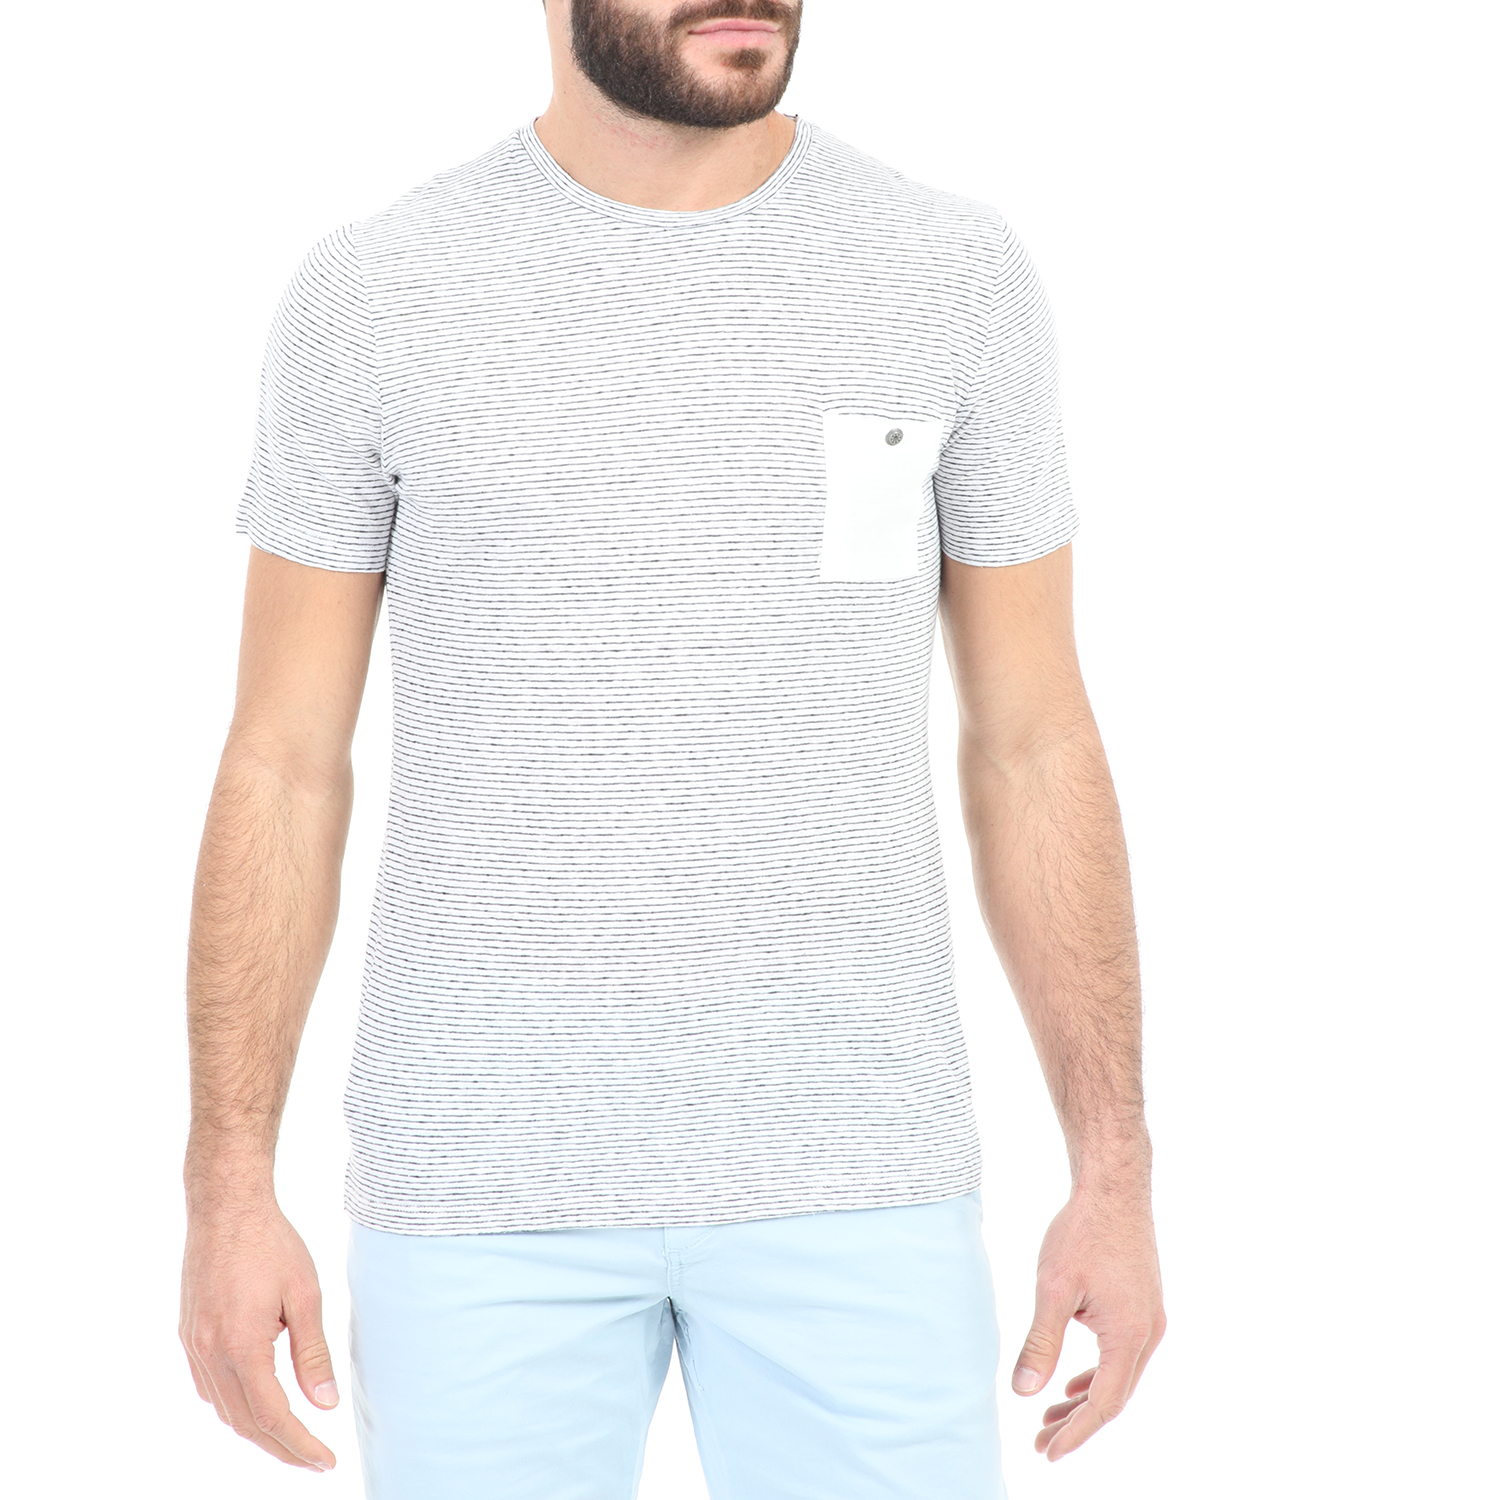 Ανδρικά/Ρούχα/Μπλούζες/Κοντομάνικες SSEINSE - Ανδρικό t-shirt SSEINSE λευκό μπλε